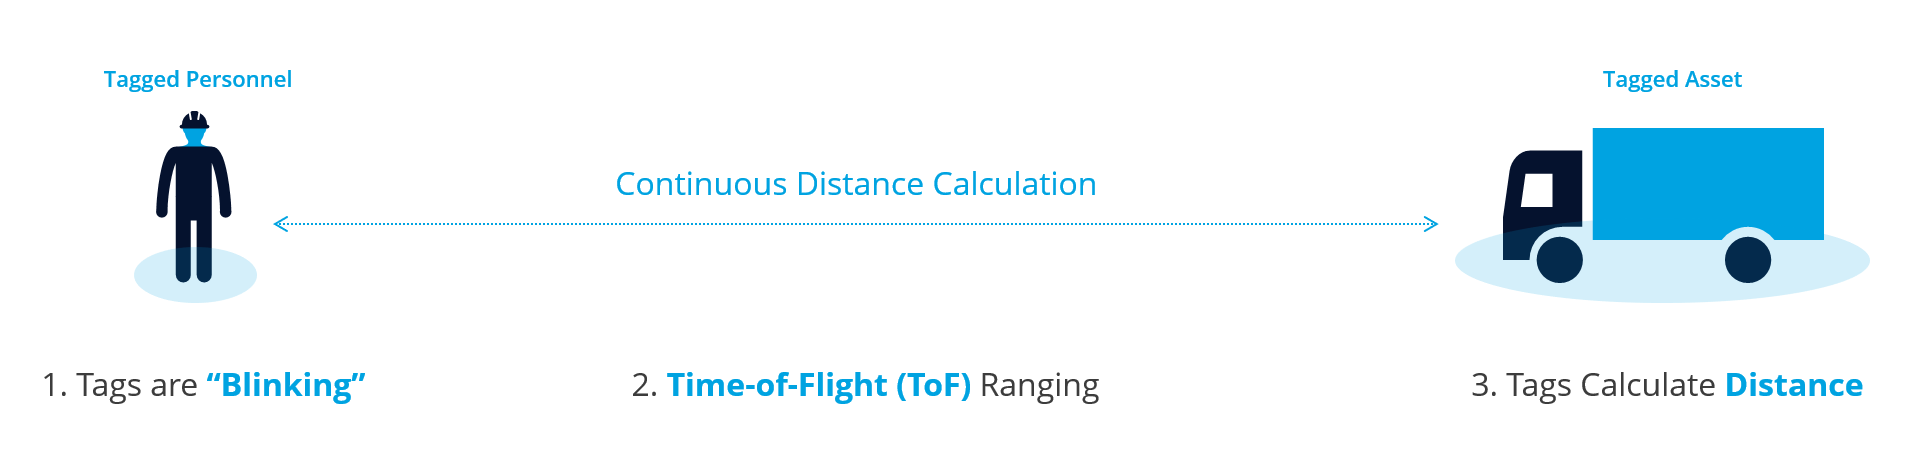 Wie die Flugzeitmessung funktioniert, um kontinuierlich die Entfernung zwischen einem markierten Objekt und einem markierten Mitarbeiter zu berechnen.